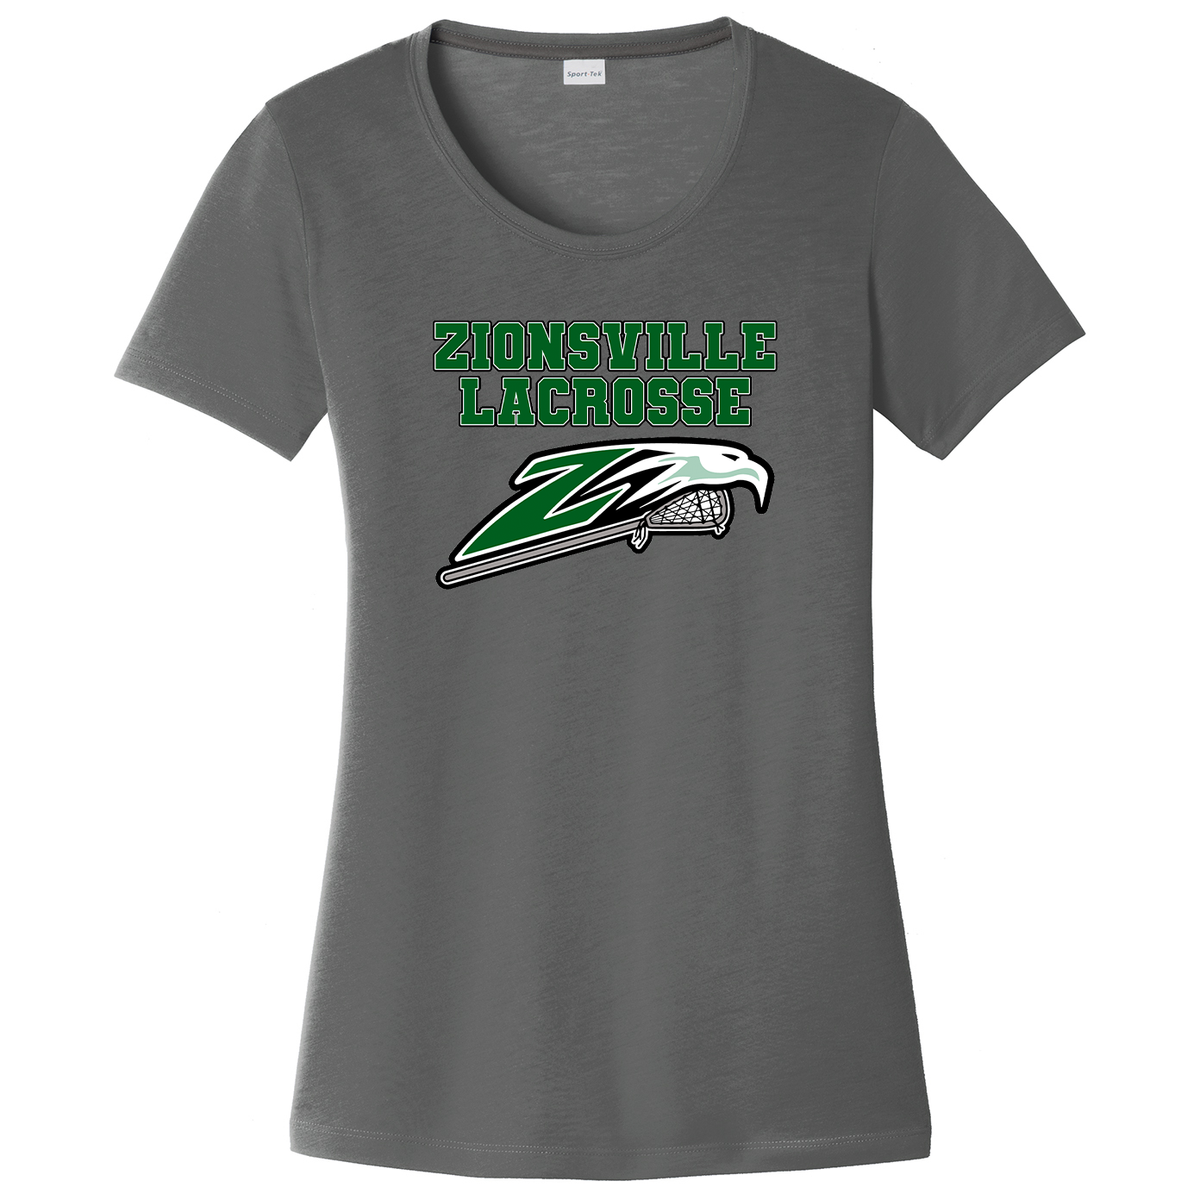 Zionsville Lacrosse Women's CottonTouch Performance T-Shirt